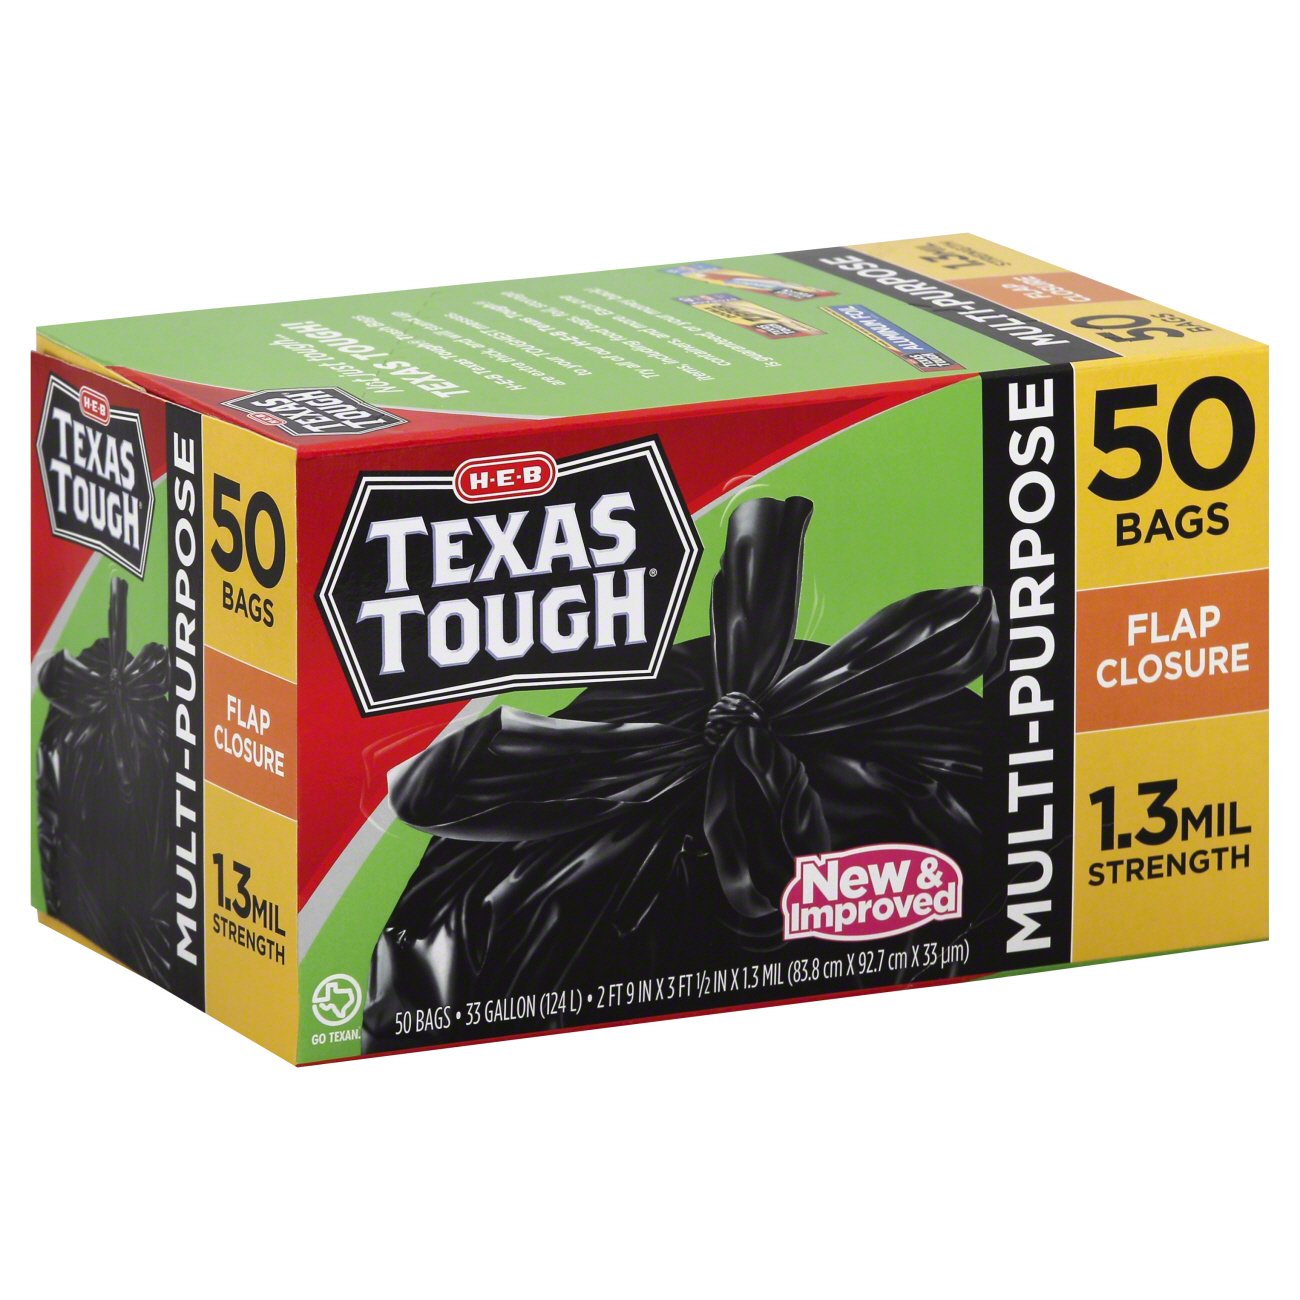 H-E-B Texas Tough Flap Closure 33 Gallon Trash Bags